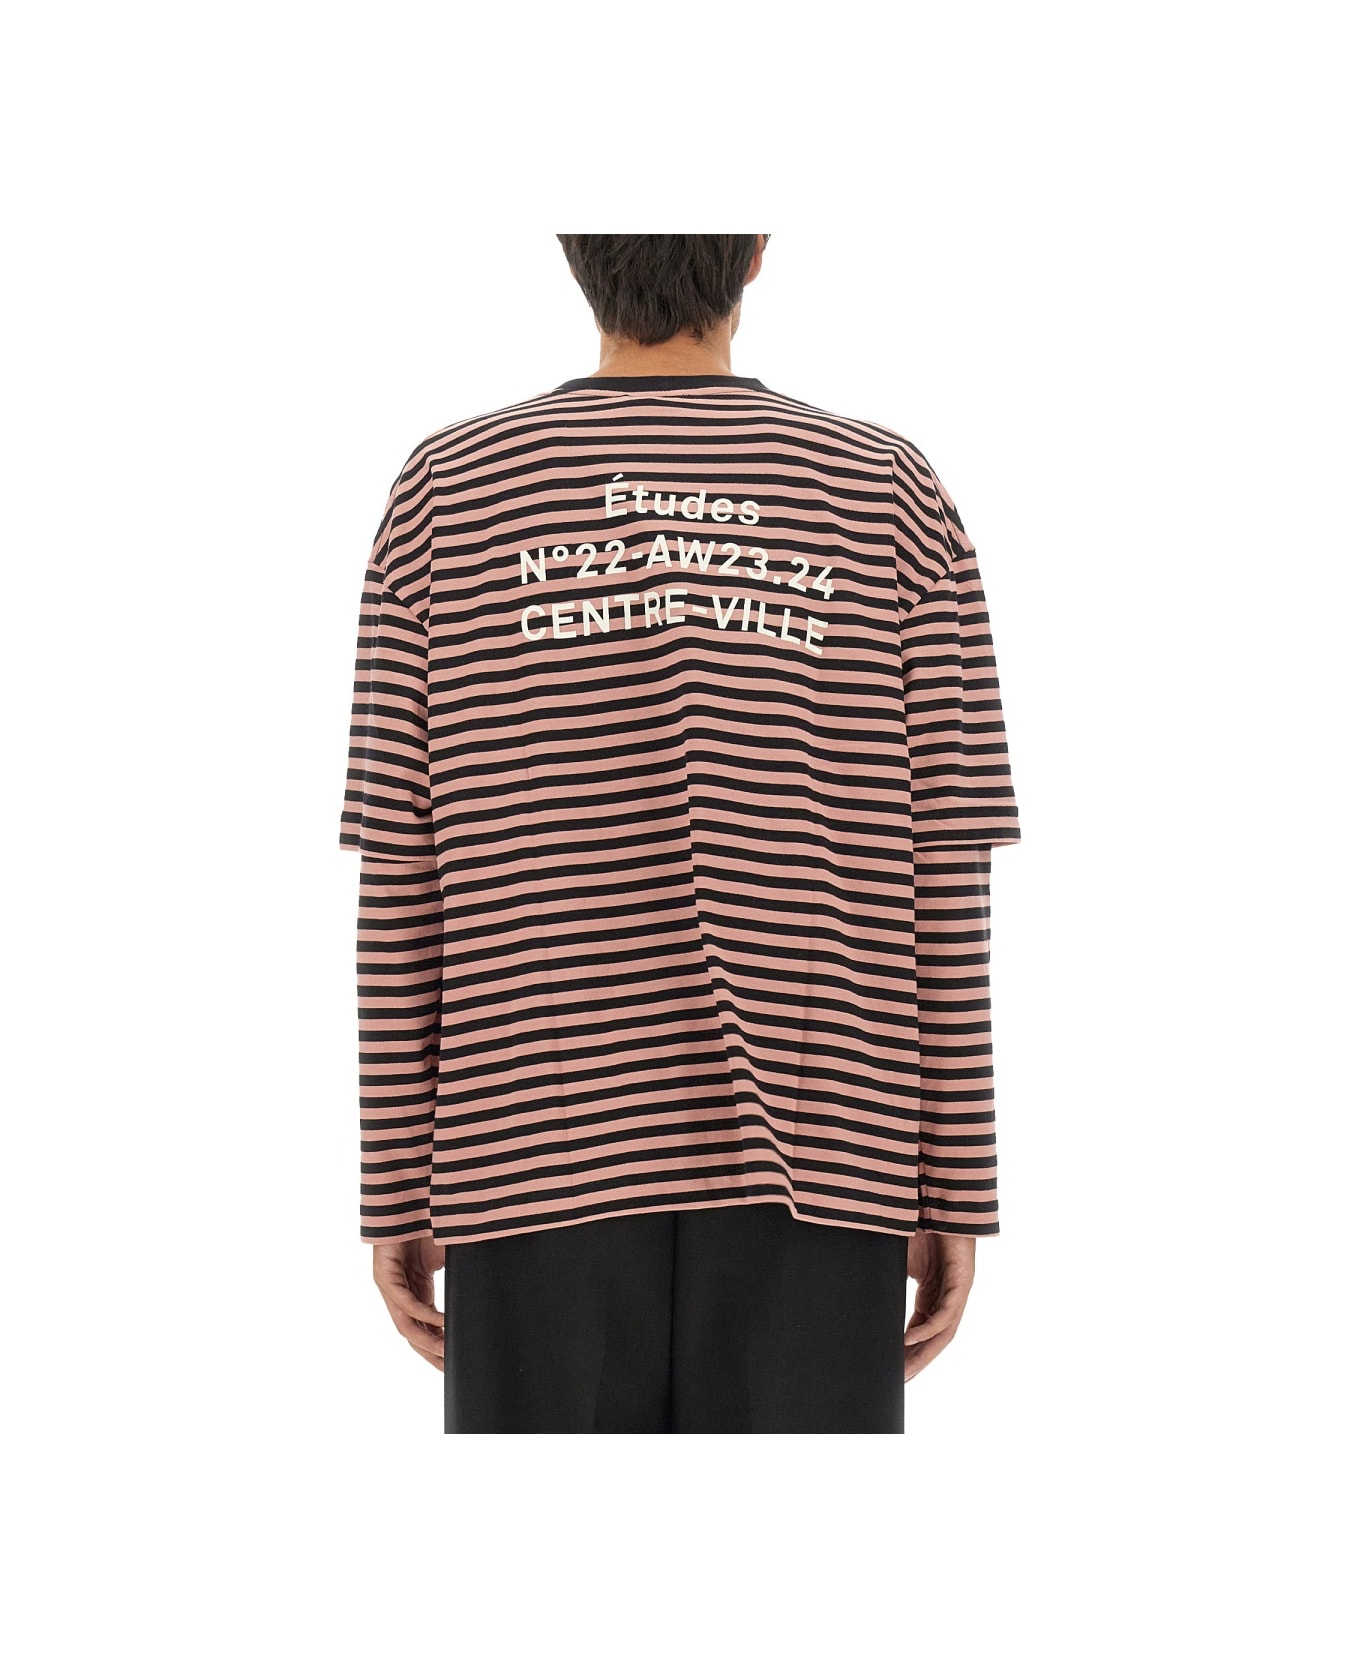 Études T-shirt With Stripe Pattern - MULTICOLOUR シャツ